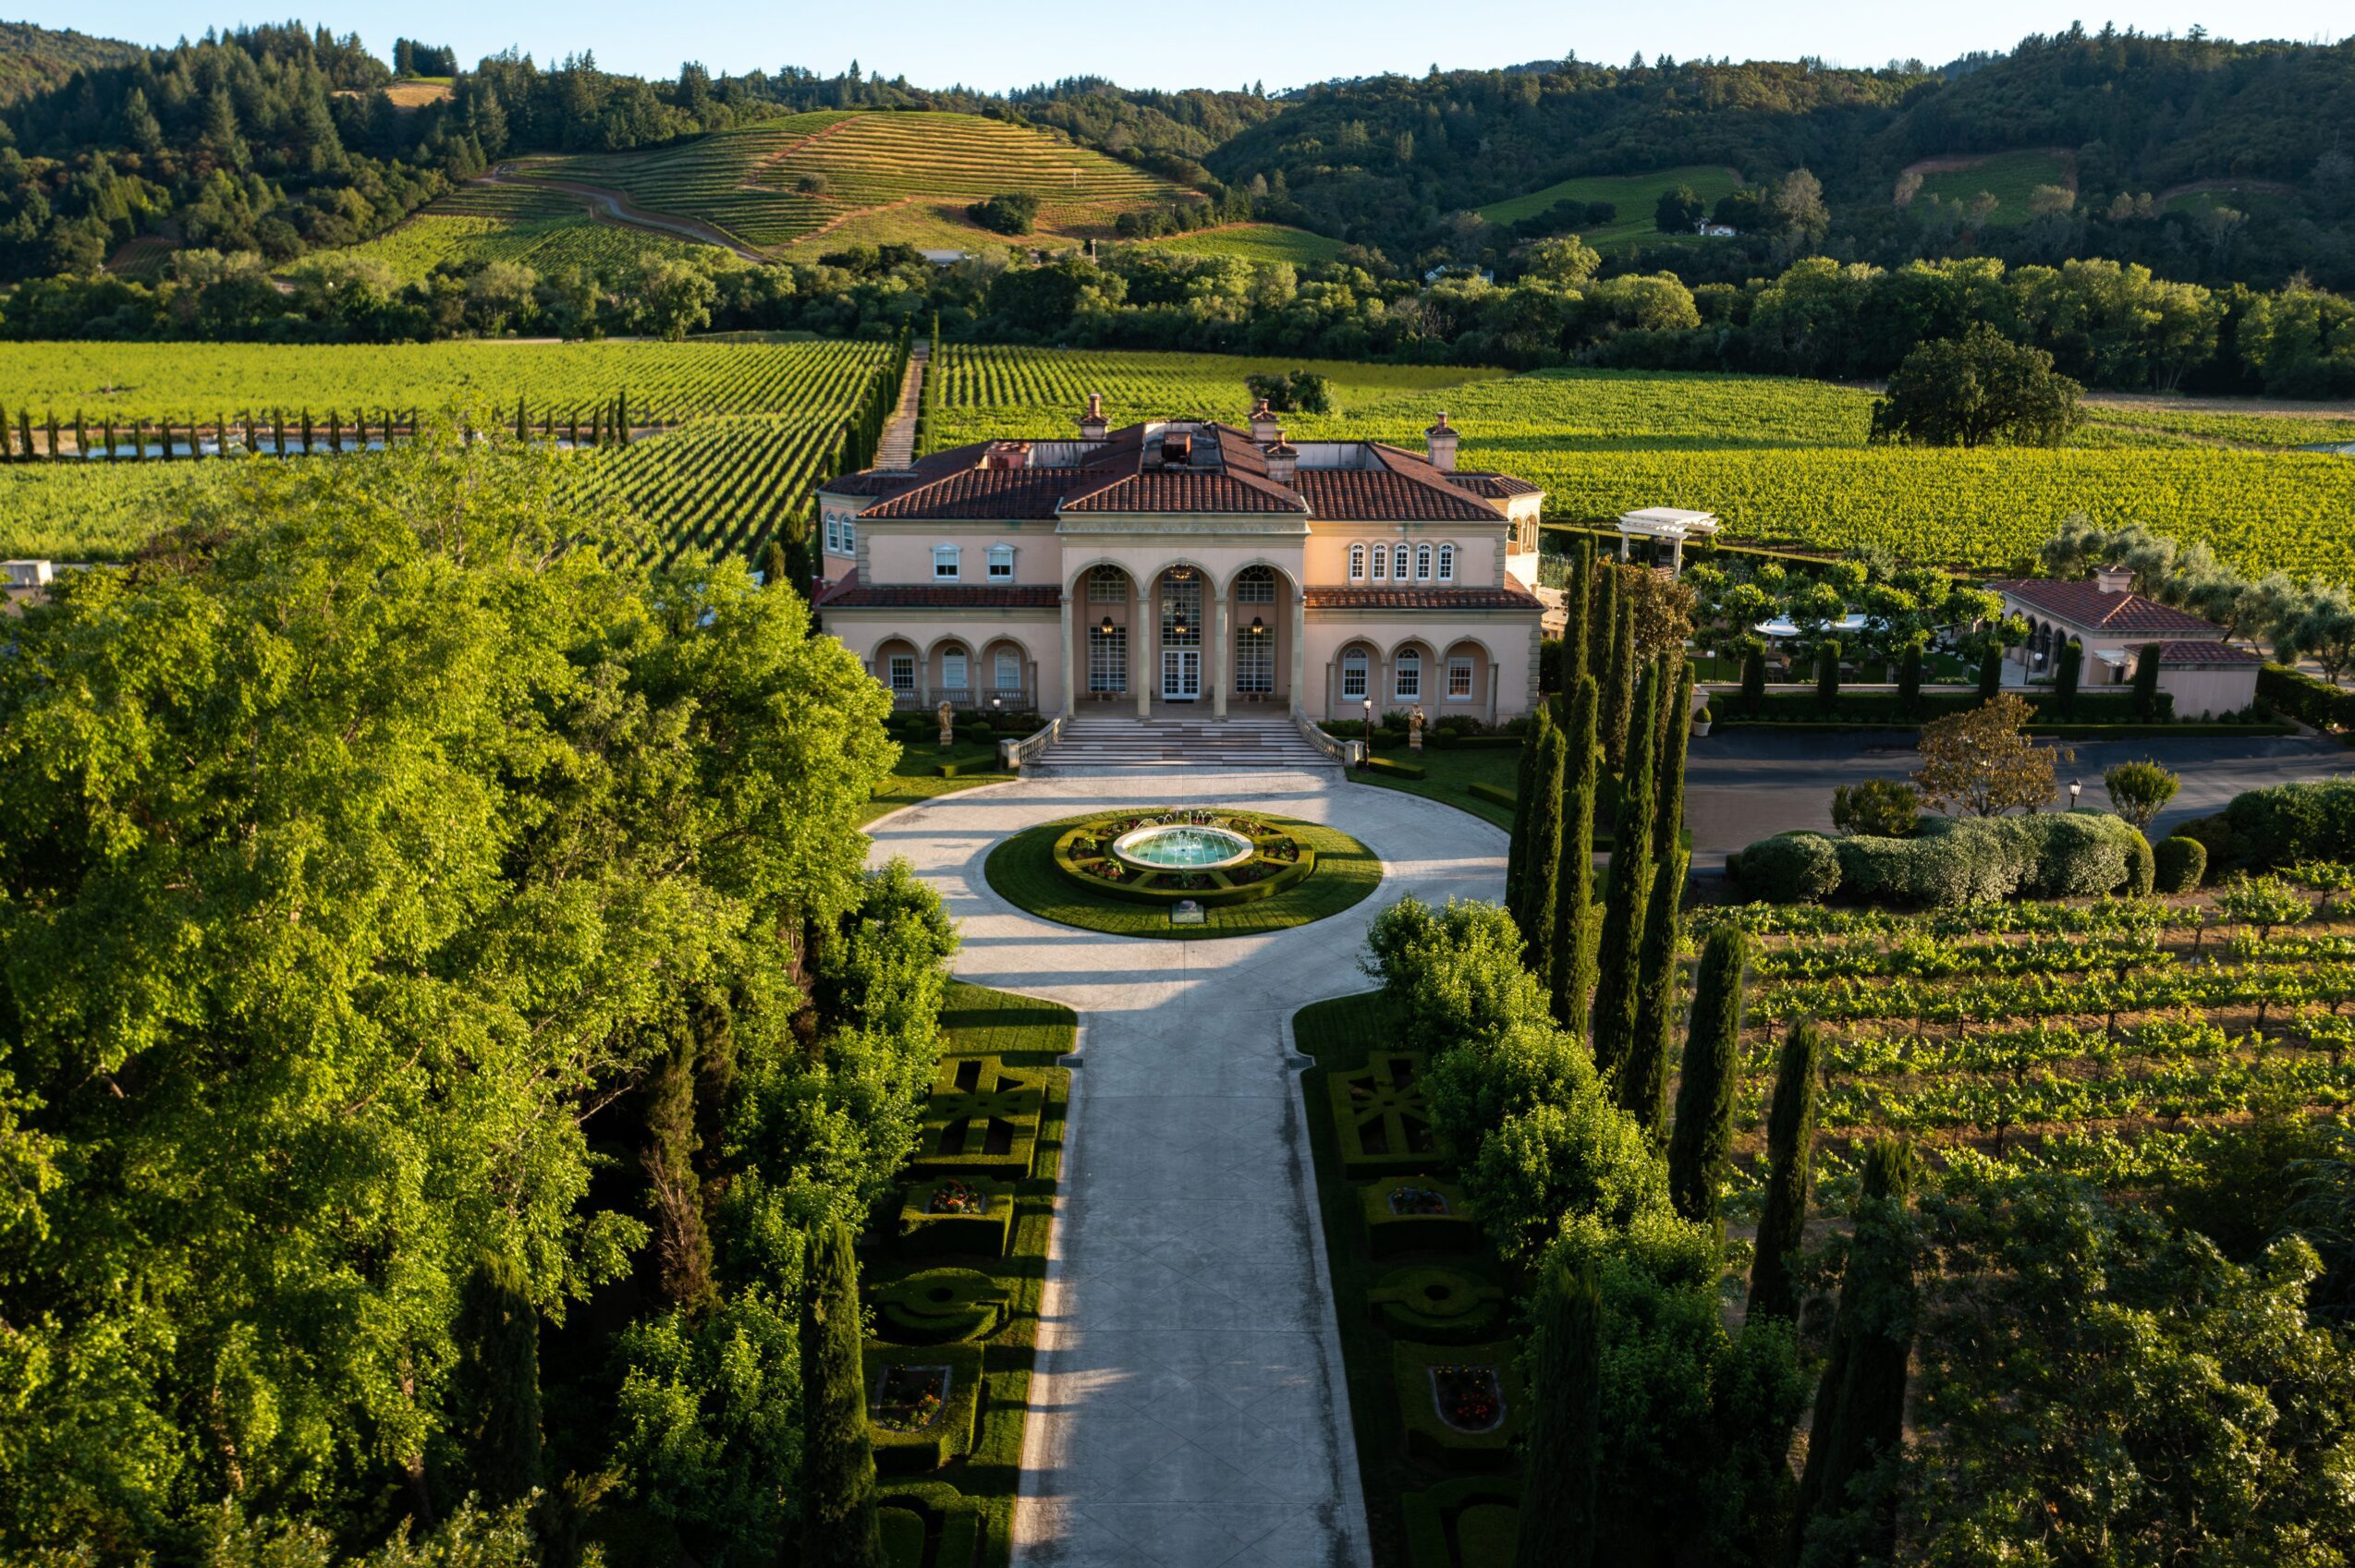 Ferrari-Carano Vineyards and Winery